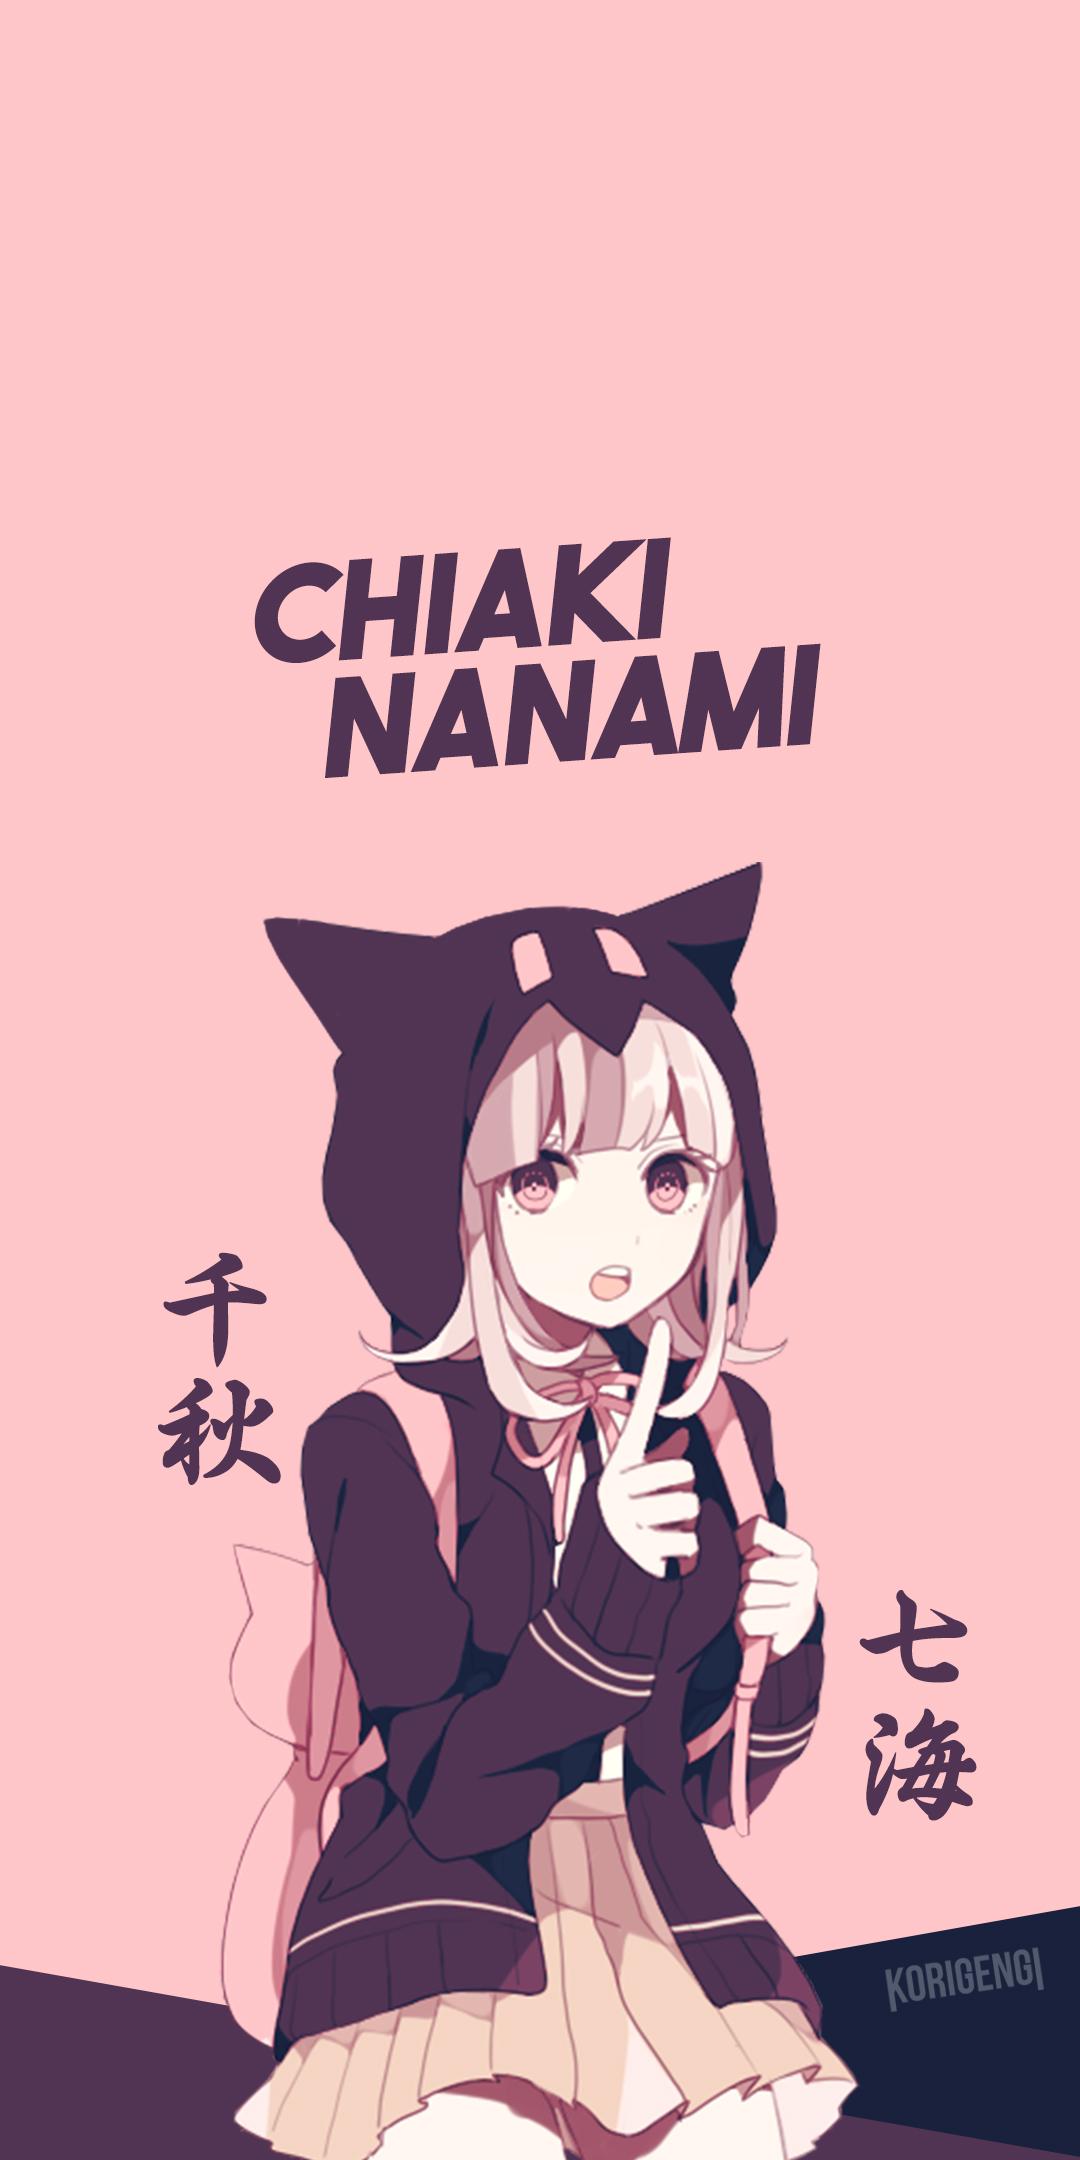 Chiaki Nanami 4K Minimalist Desktop Wallpapers Both her original colors  and her School colors  rdanganronpa